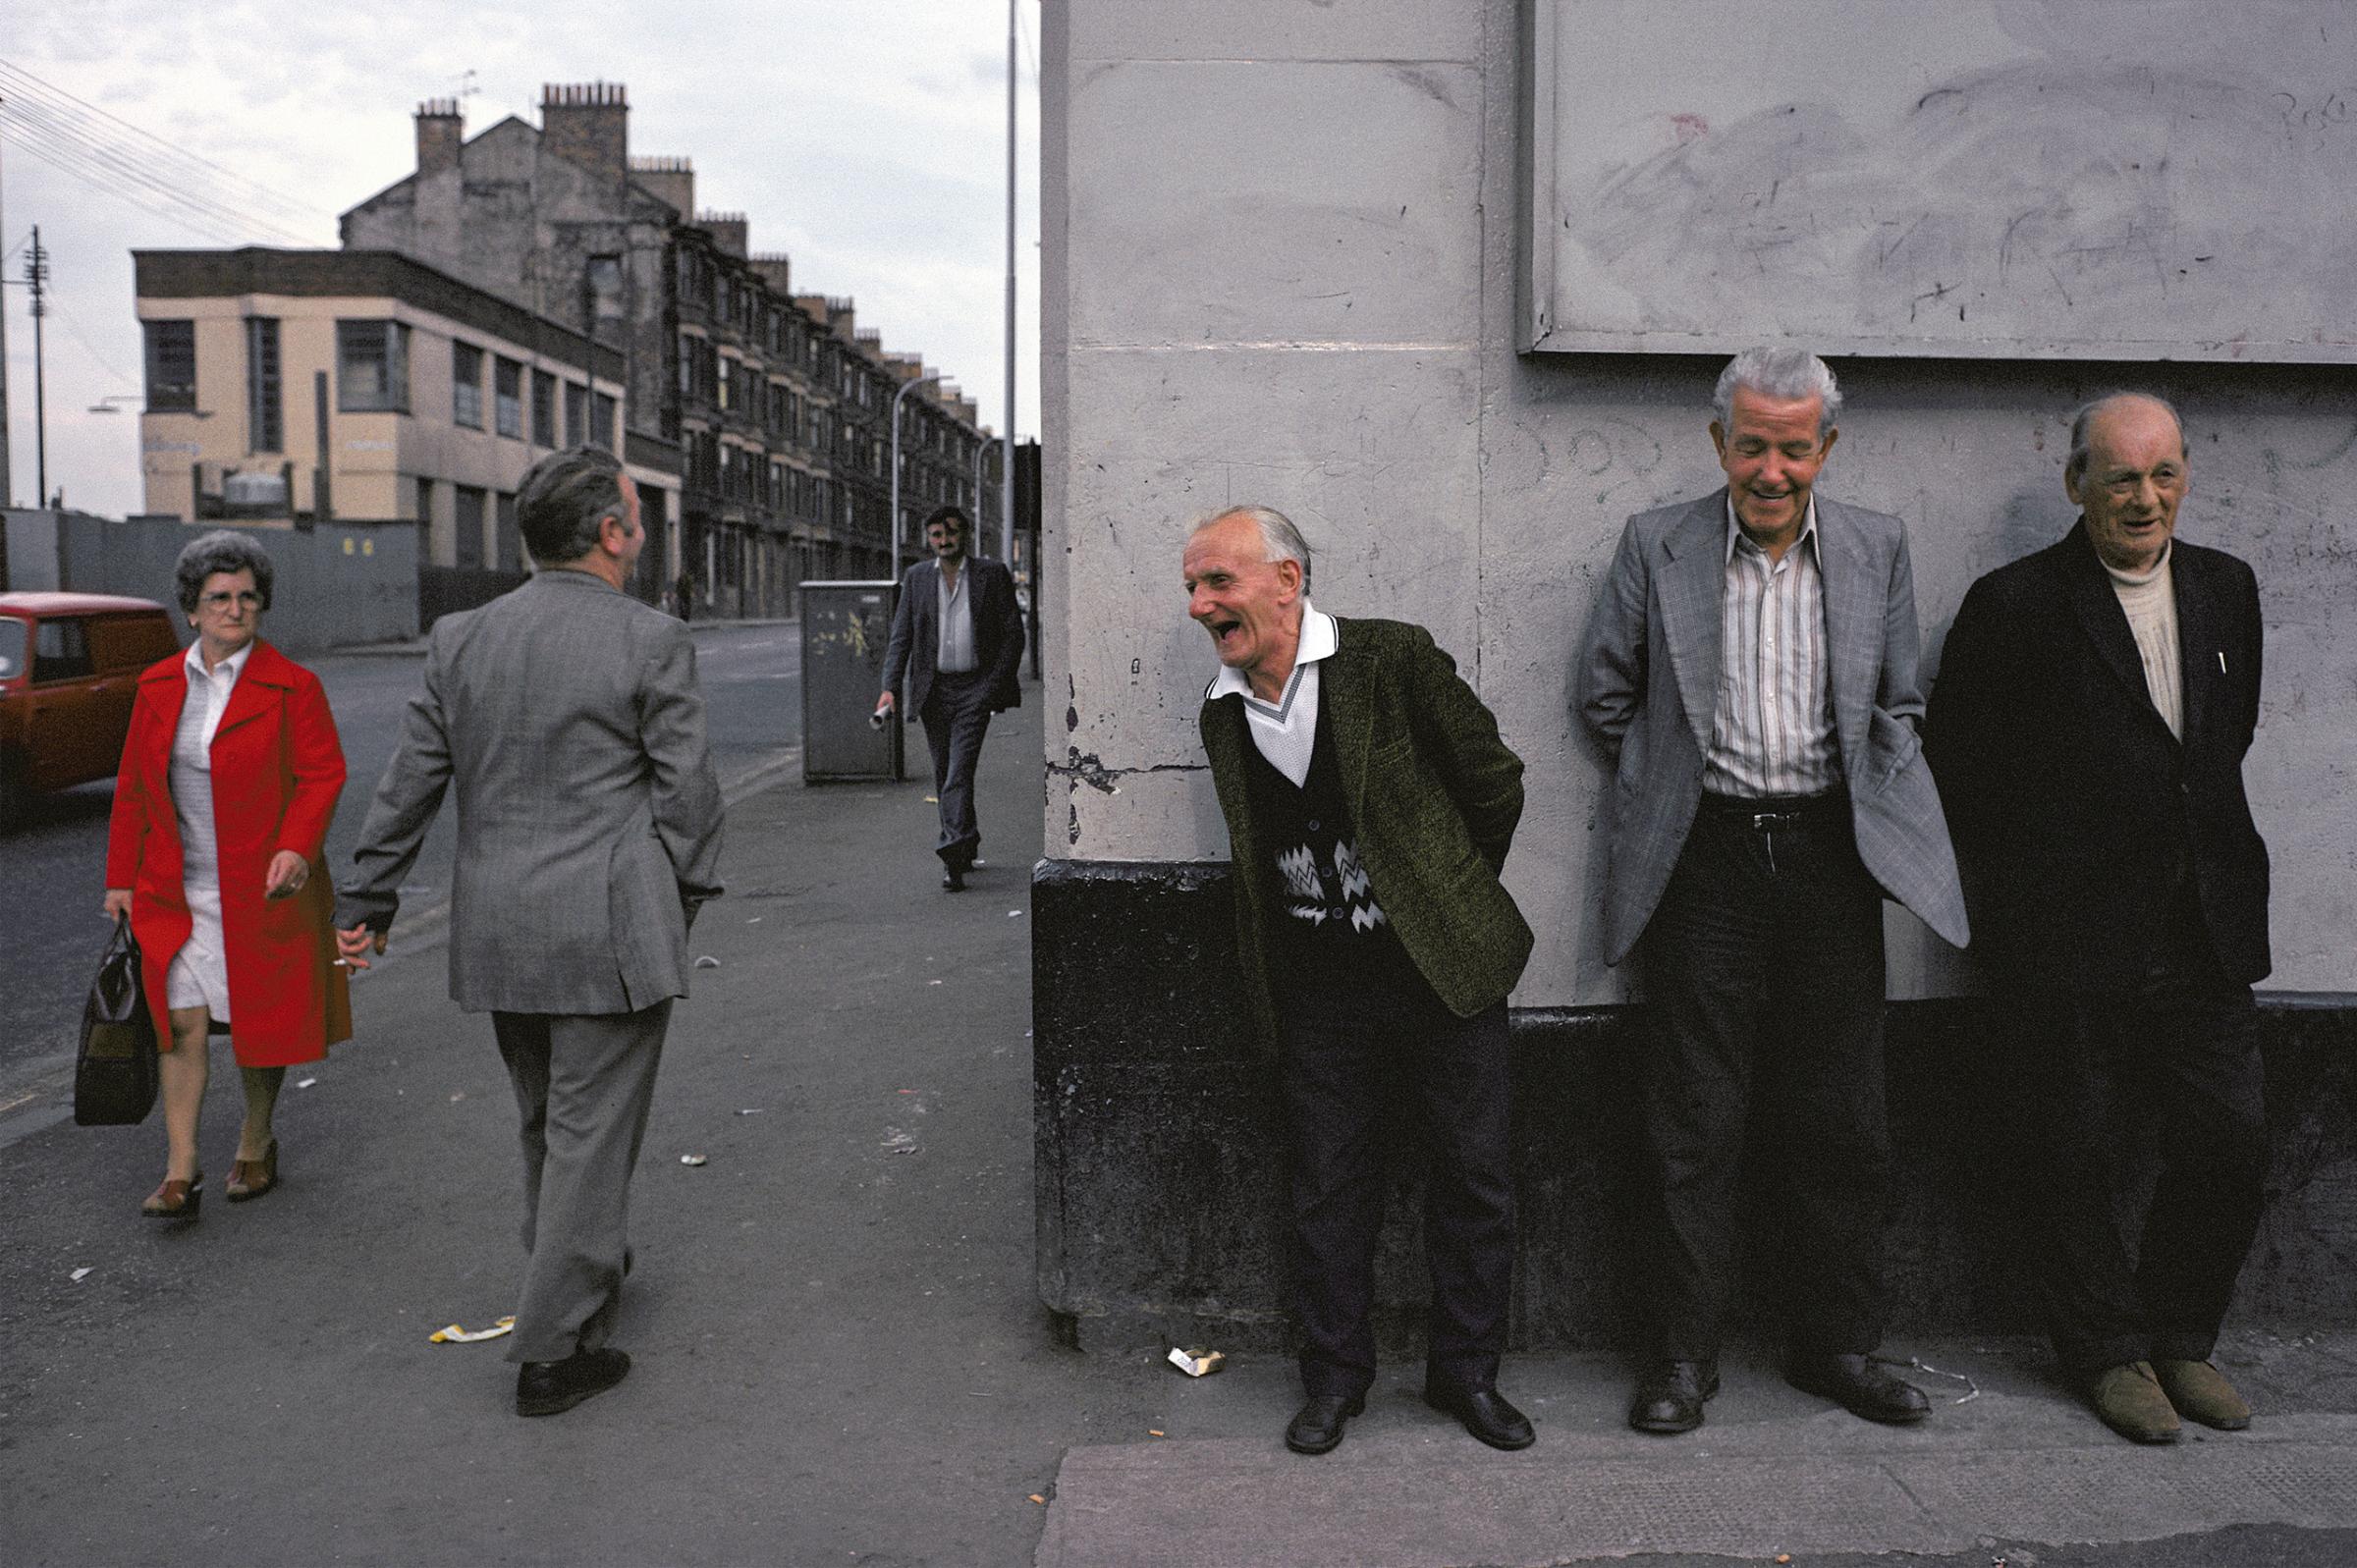 Glasgow, 1980